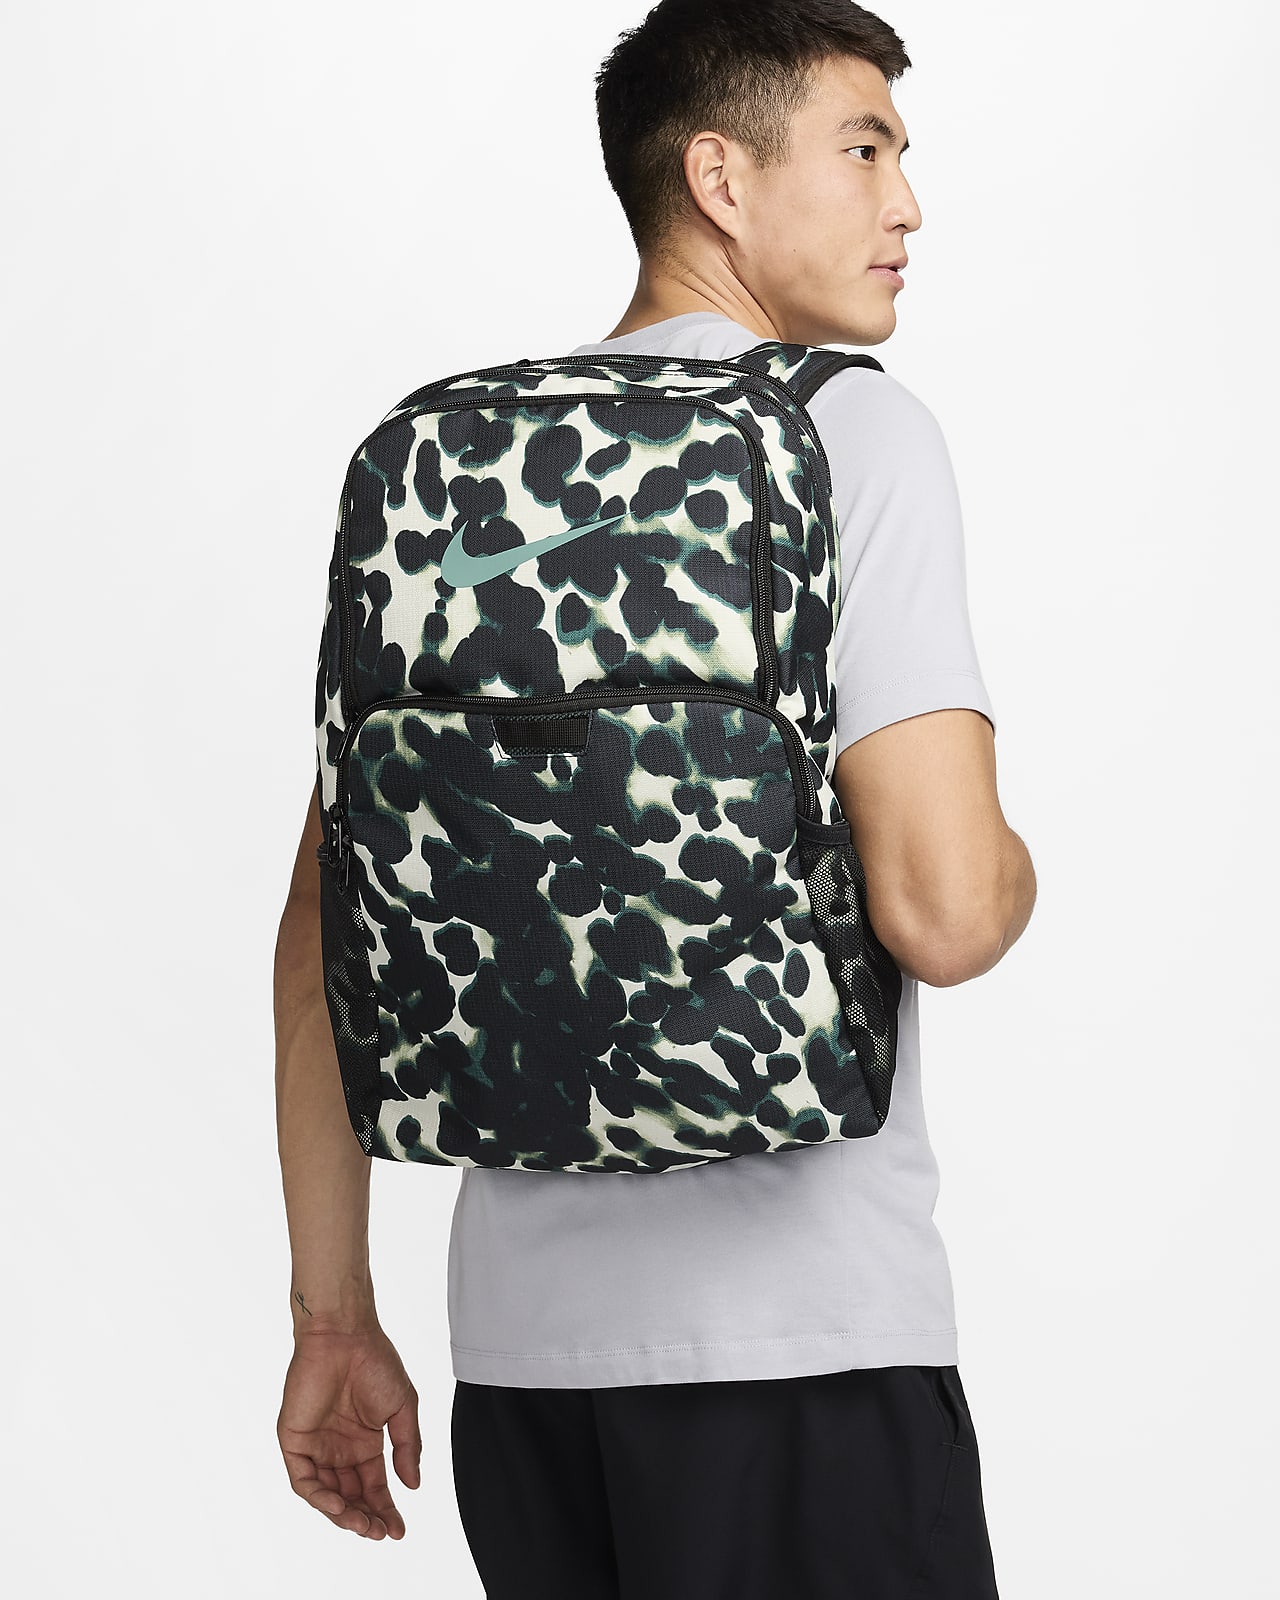 Nike Brasilia Training Backpack (Extra Large)